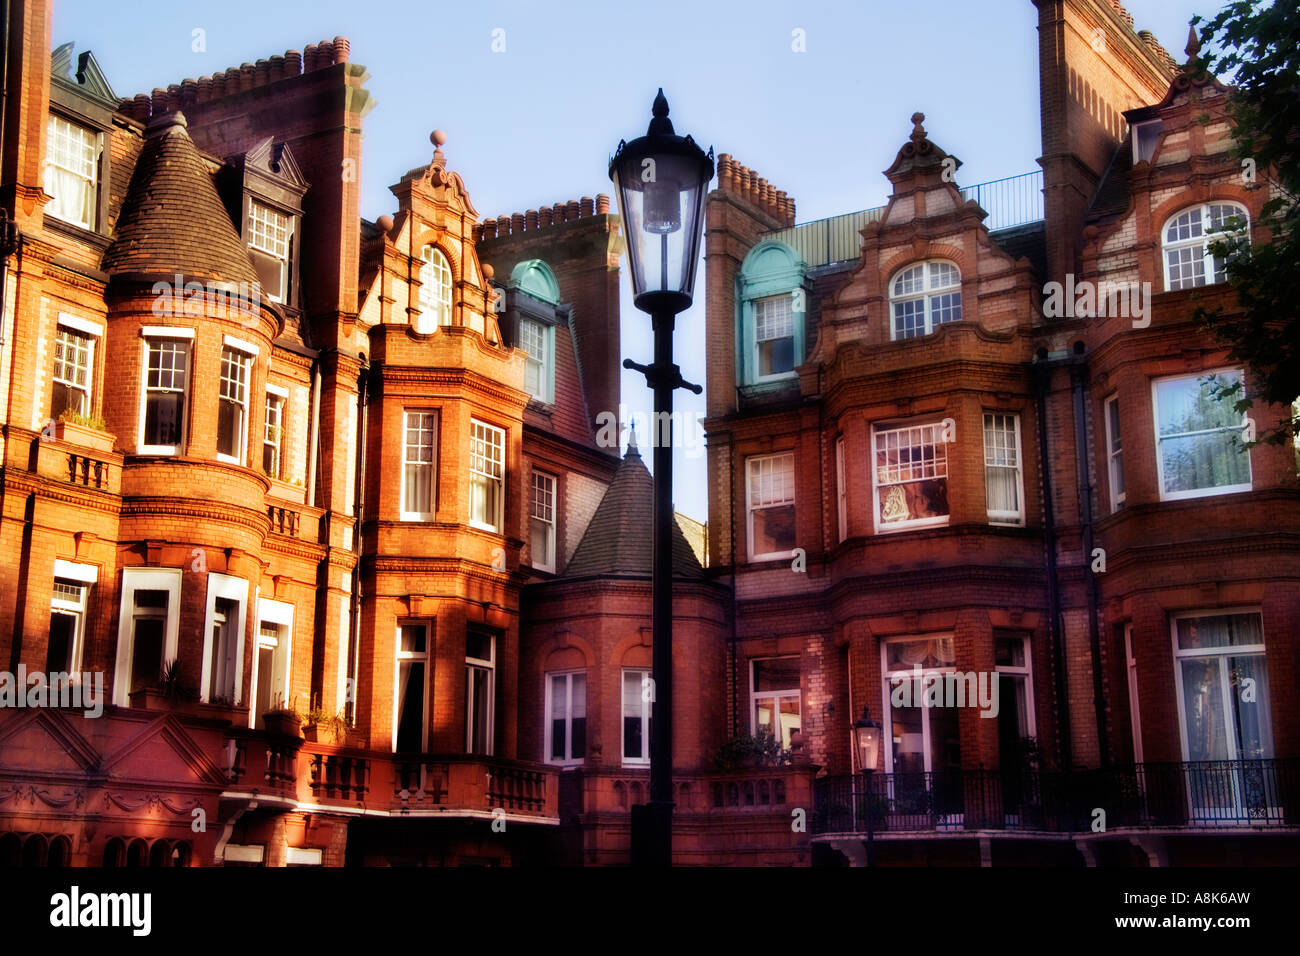 Hermosa vivienda victoriana de ladrillos rojos ricos en Sloane Square con lámpara de la calle Londres Chelsea London Foto de stock